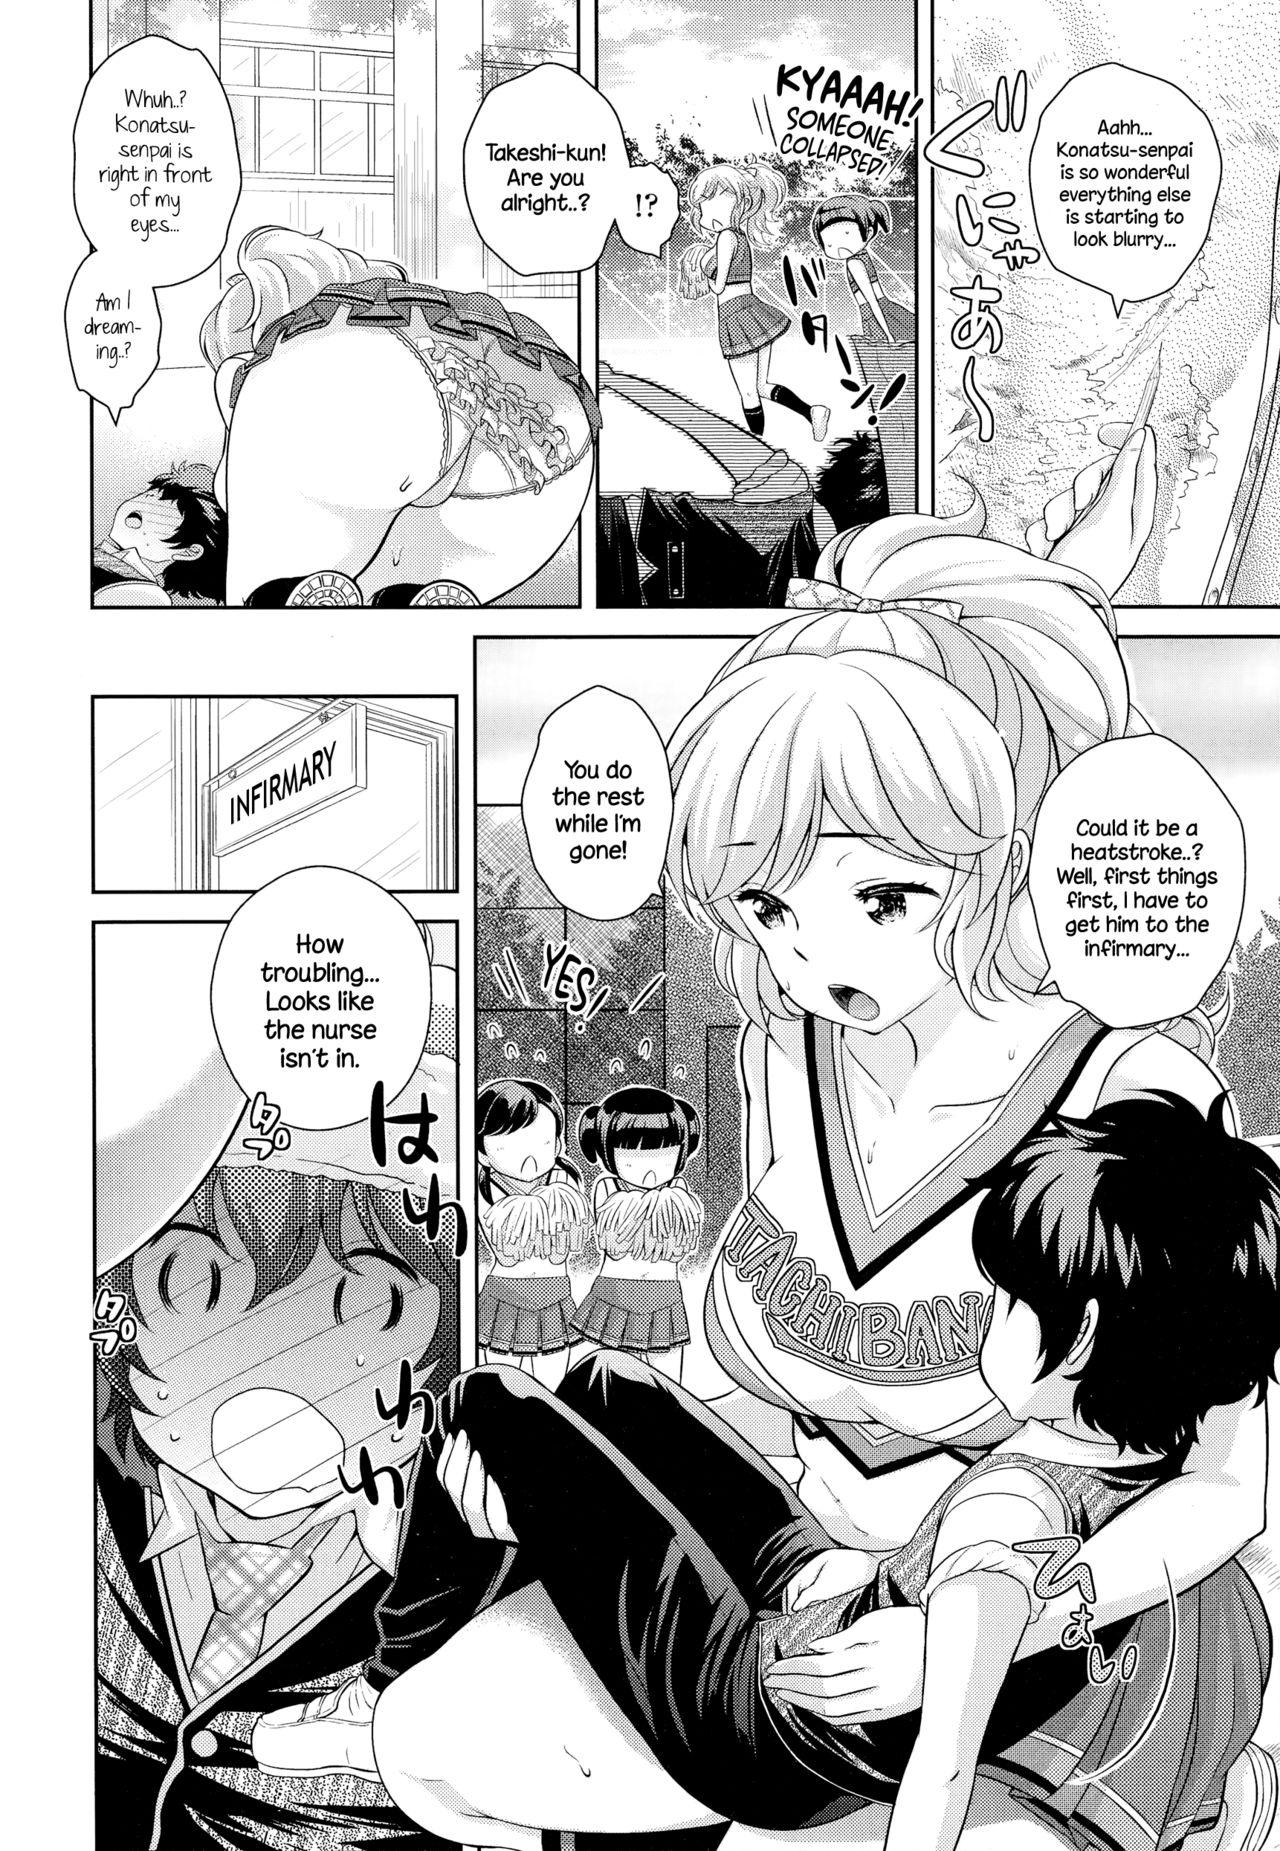 Creampies Boku no Konatsu-senpai Amateur Sex - Page 2